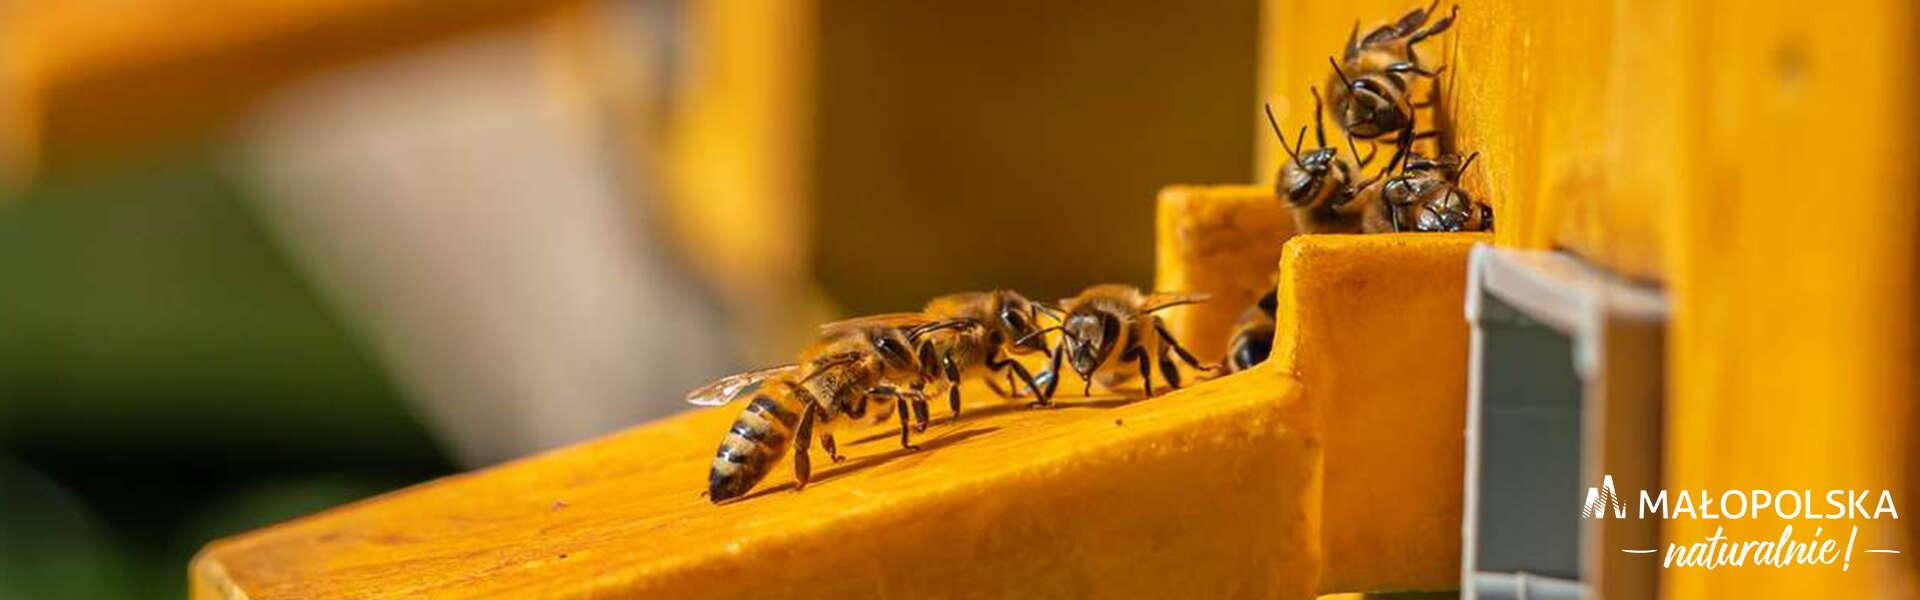 Pszczoły wchodzące do ula, na zdjęciu logo - napis Małopolska naturalnie